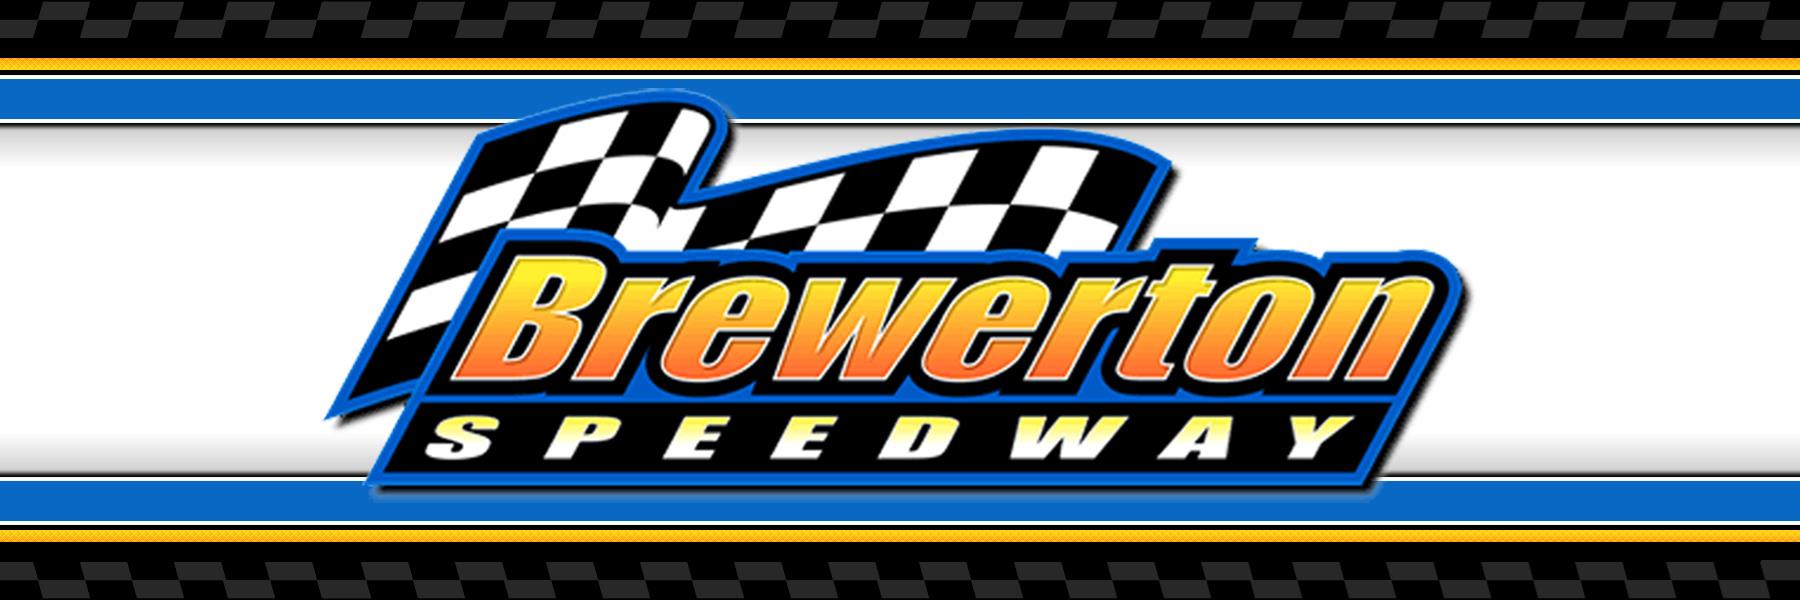 7/29/2022 - Brewerton Speedway